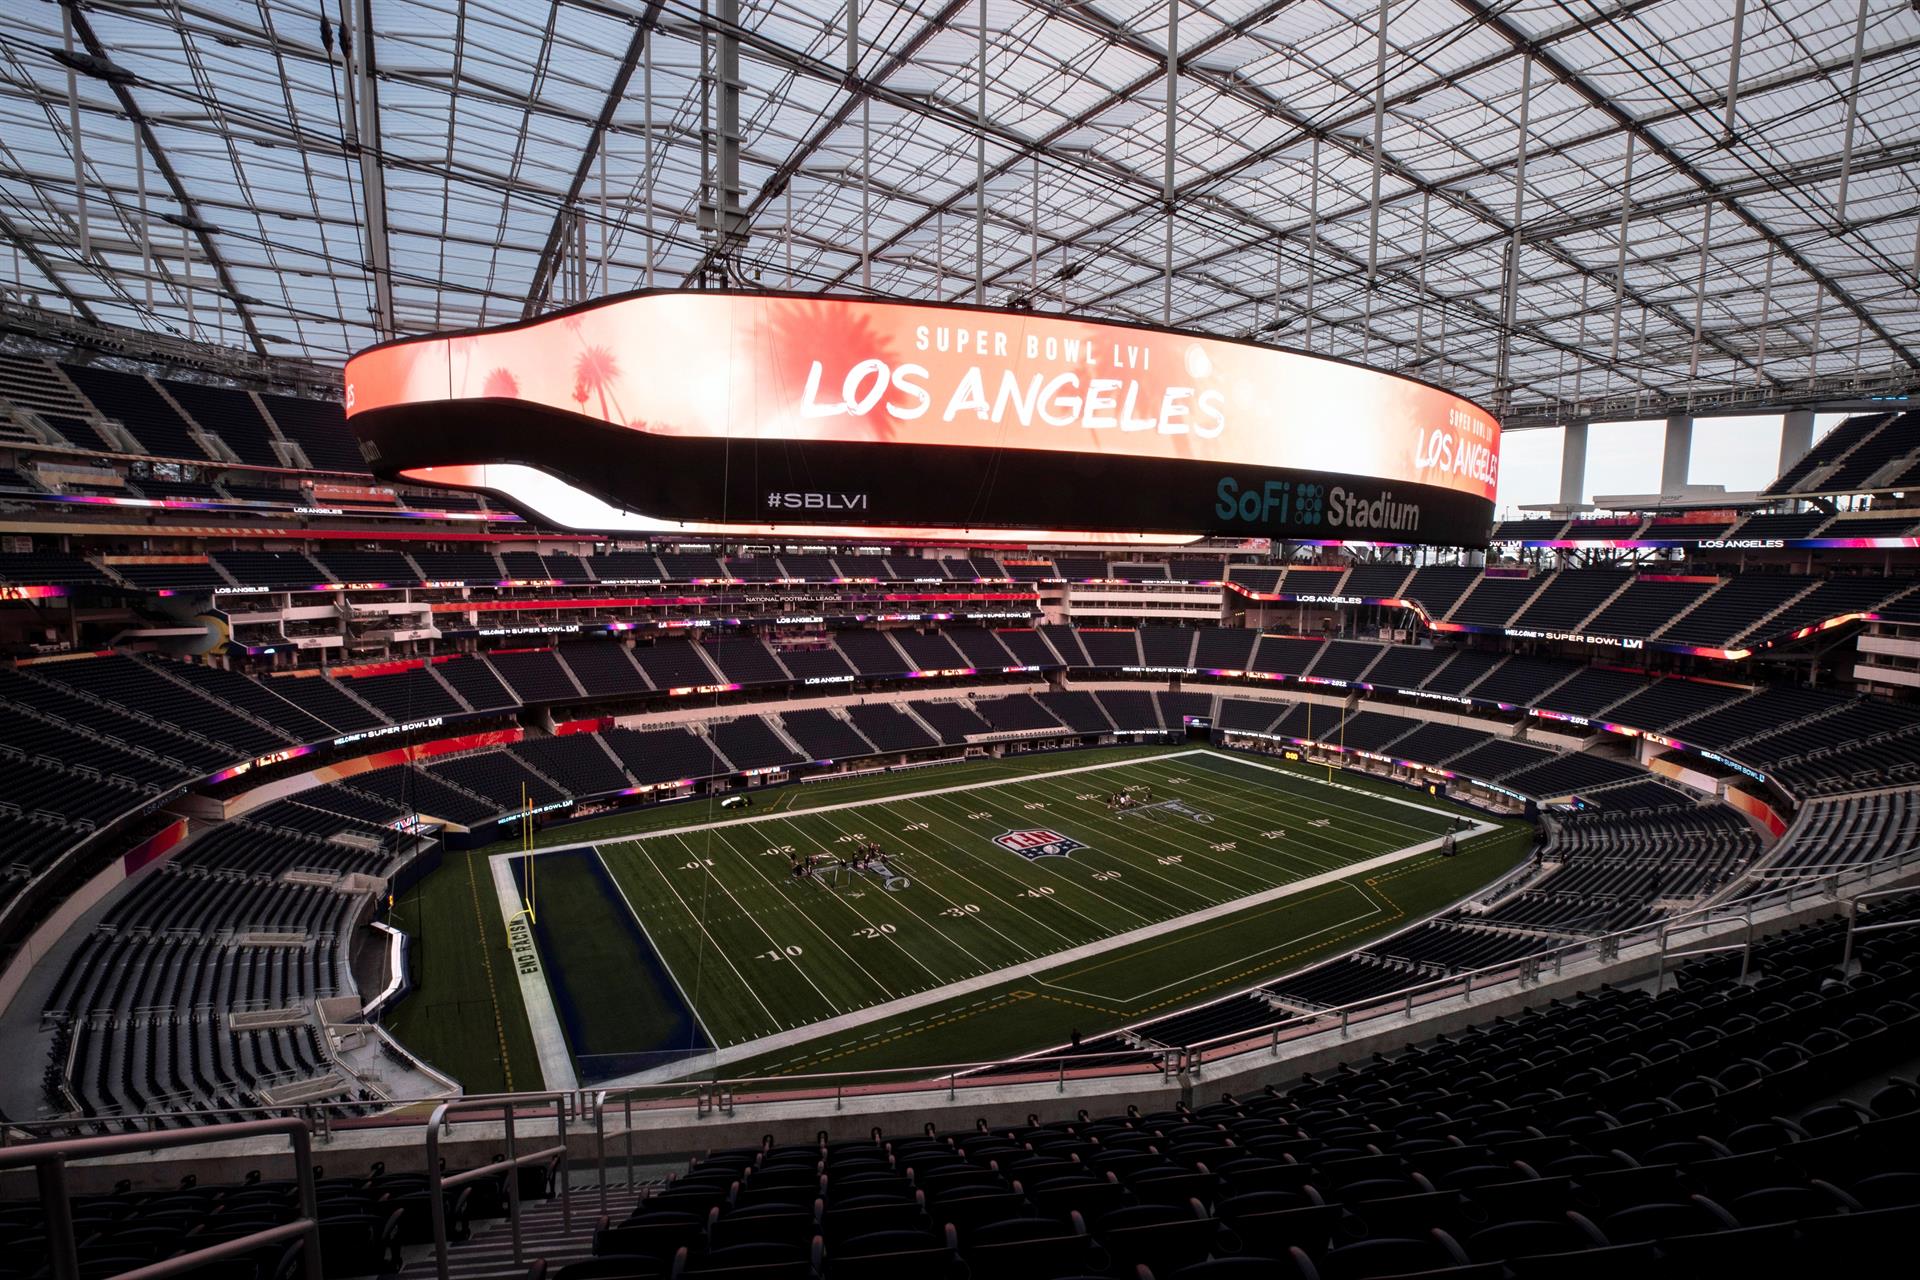 El Super Bowl dejará 477 millones de dólares en Los Ángeles